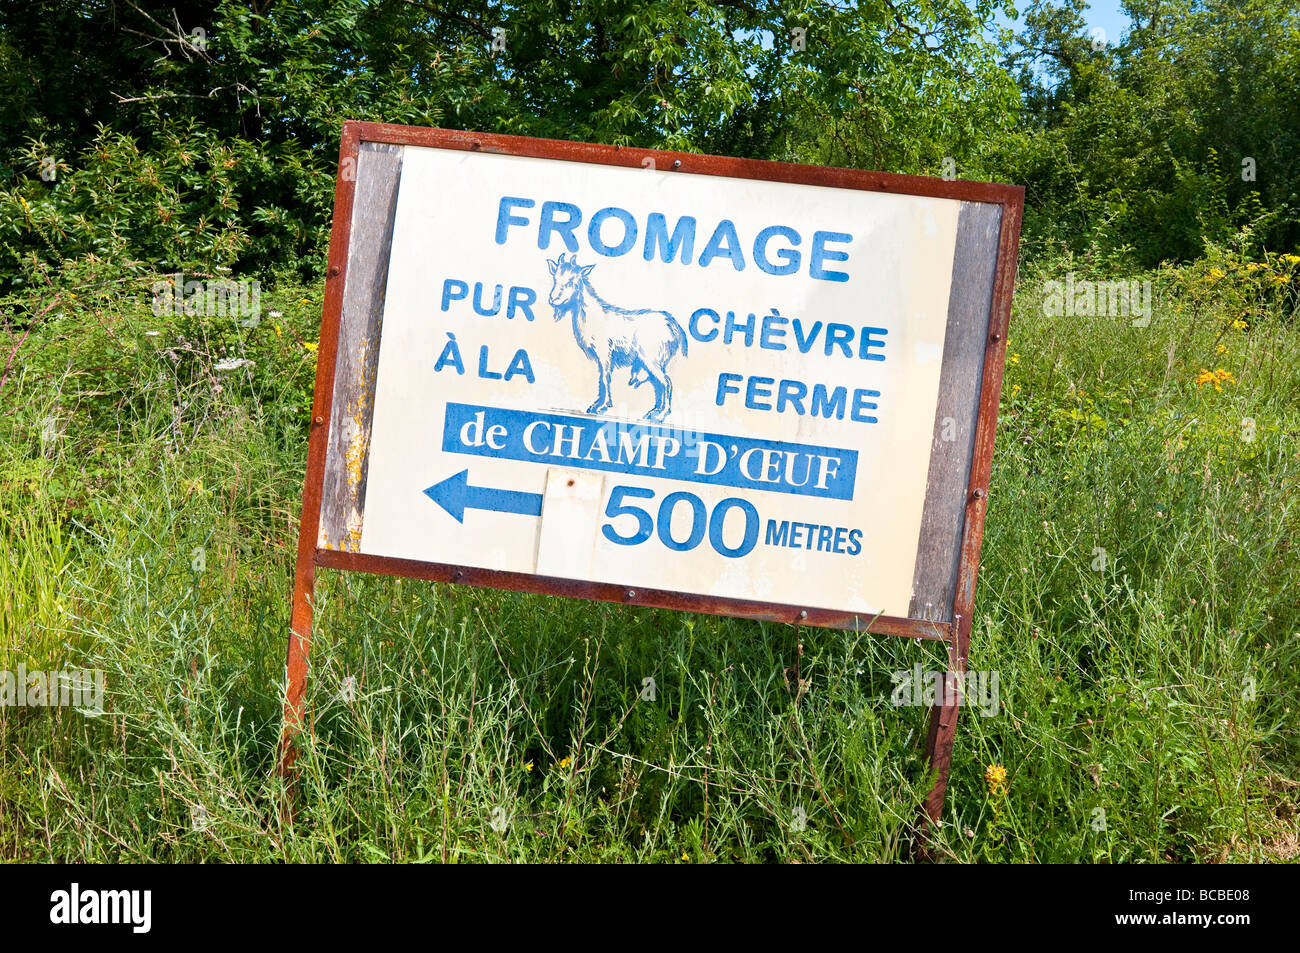 Fromage de chèvre à la vente du local de ferme - sud-Touraine, France. Banque D'Images